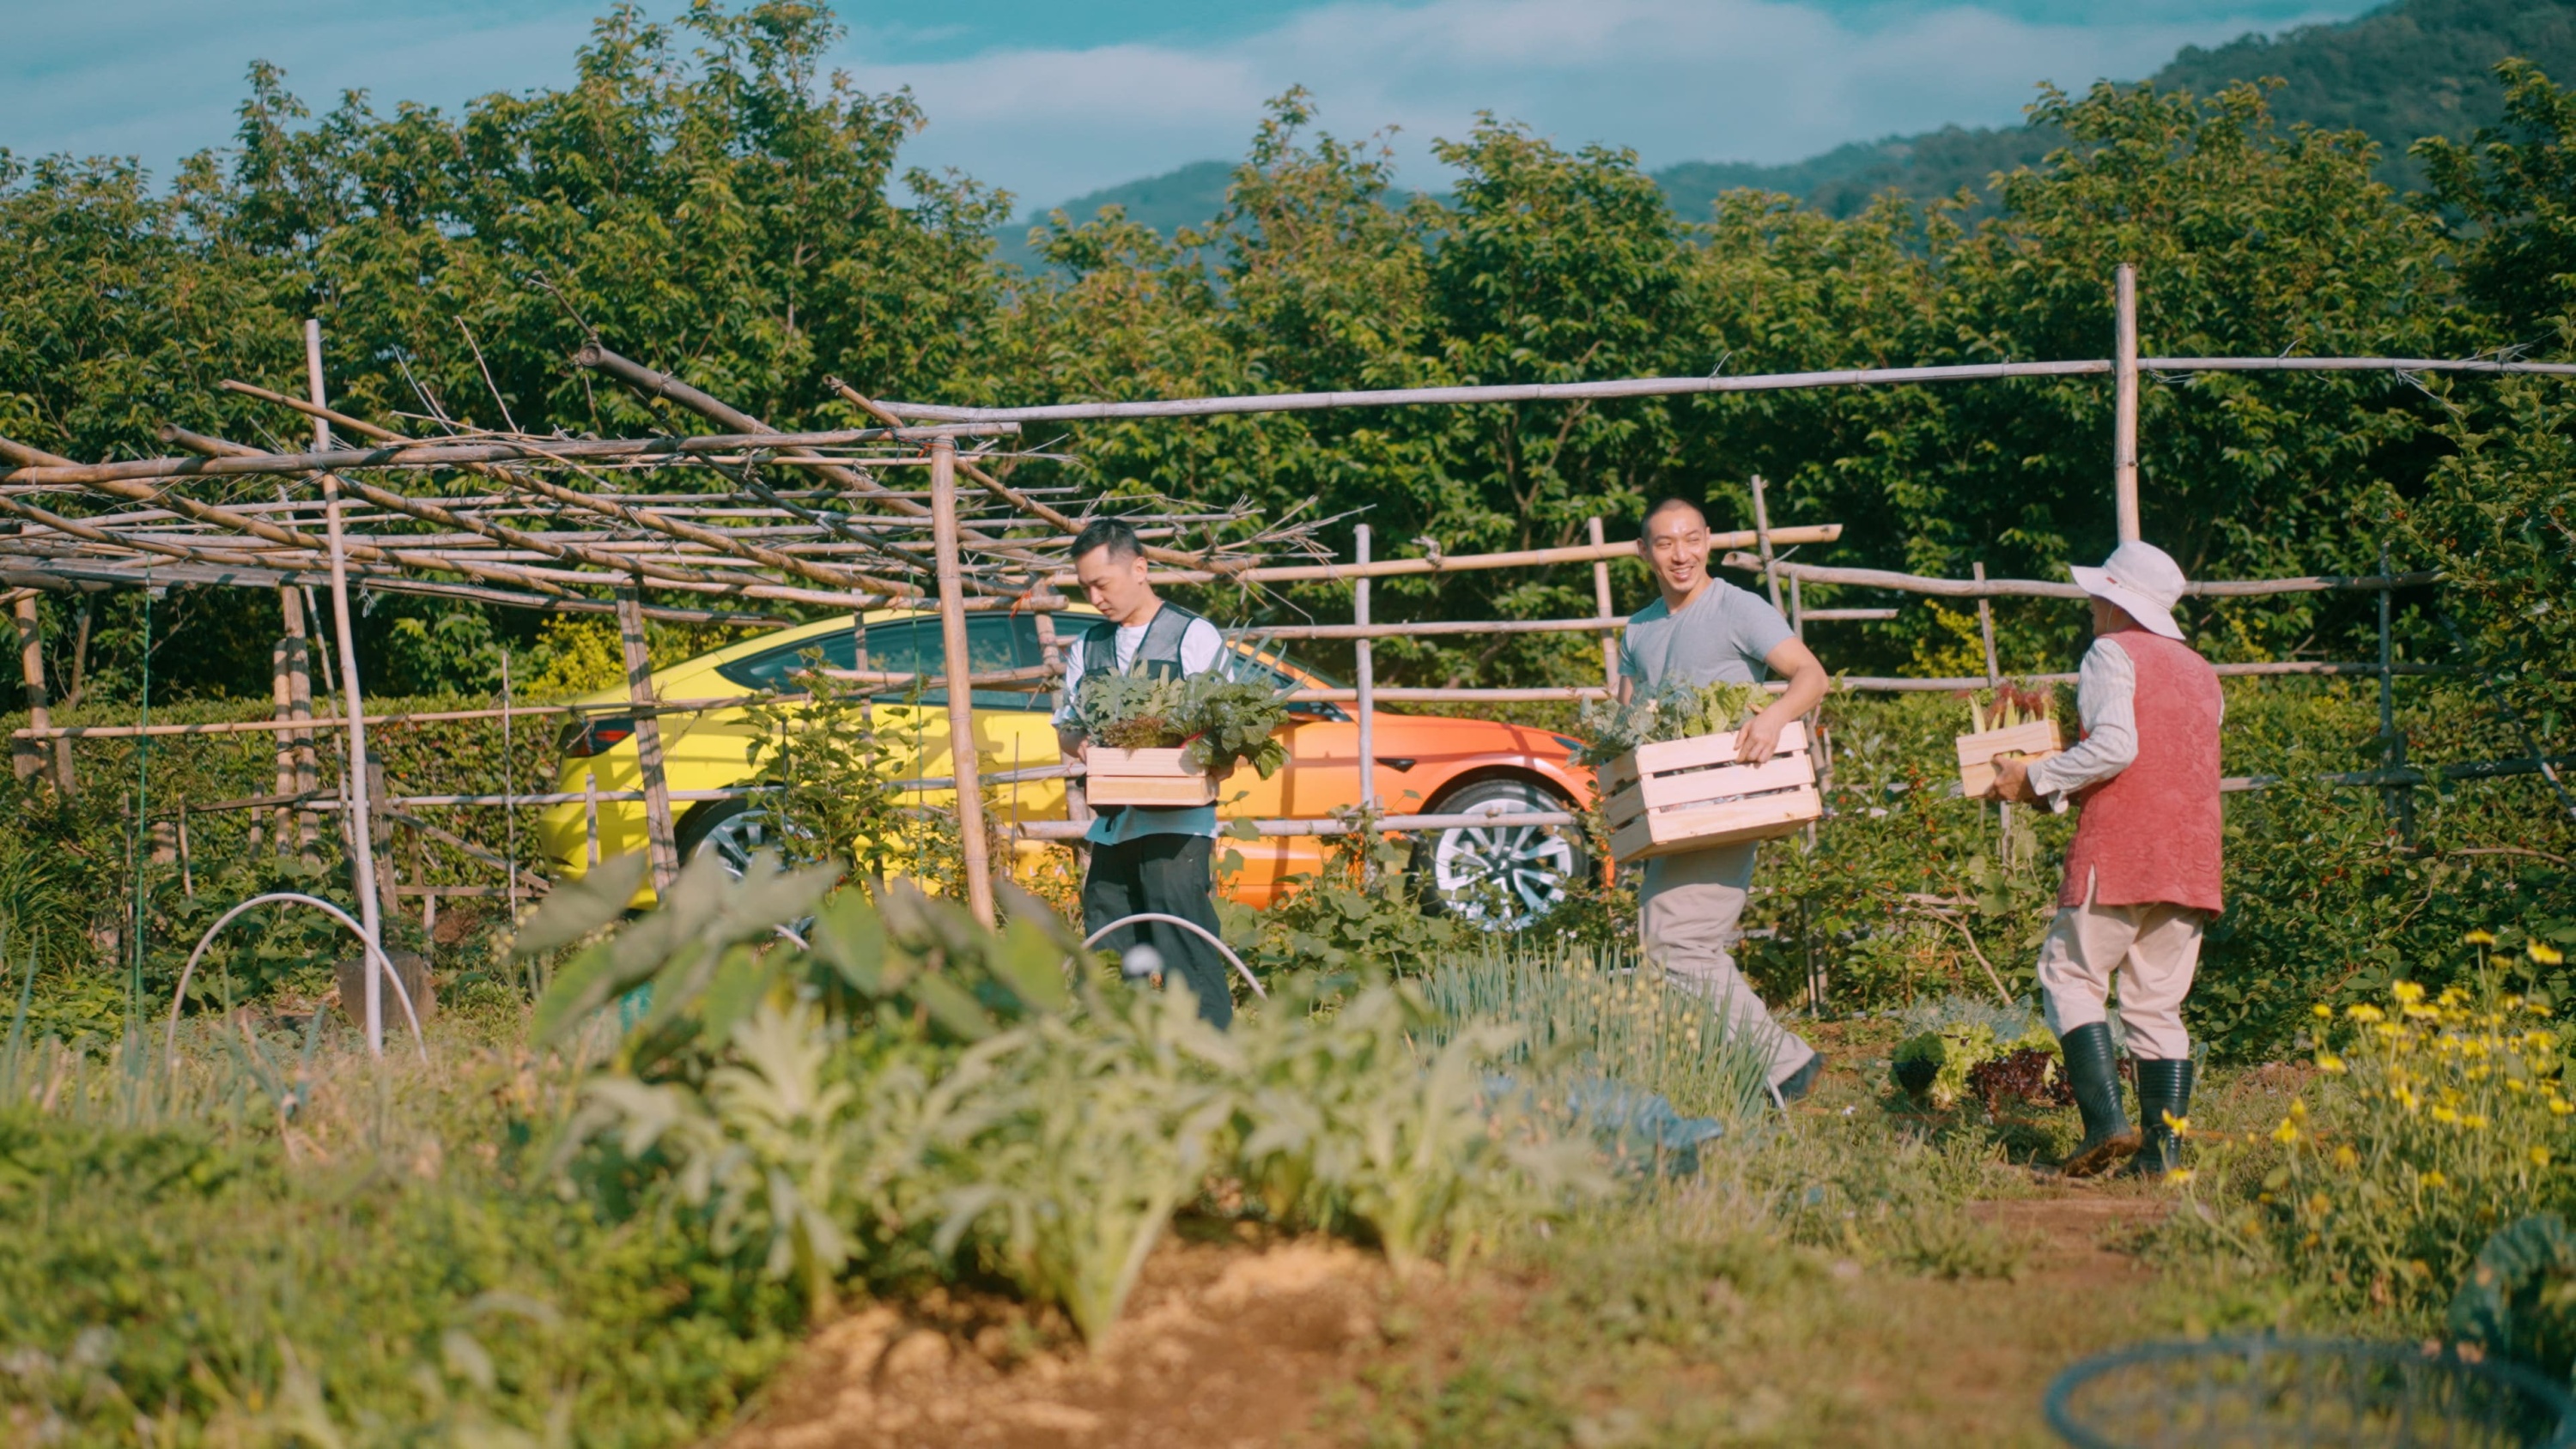 2021 年活動獲選者 Jesse 和 Sebastian 駕駛 Tesla 彩虹車無痕進出山林走訪小農，以零碳排的方式重新設計農產運輸的環節，實現「吃在地，食當令」的永續理念。.jpg